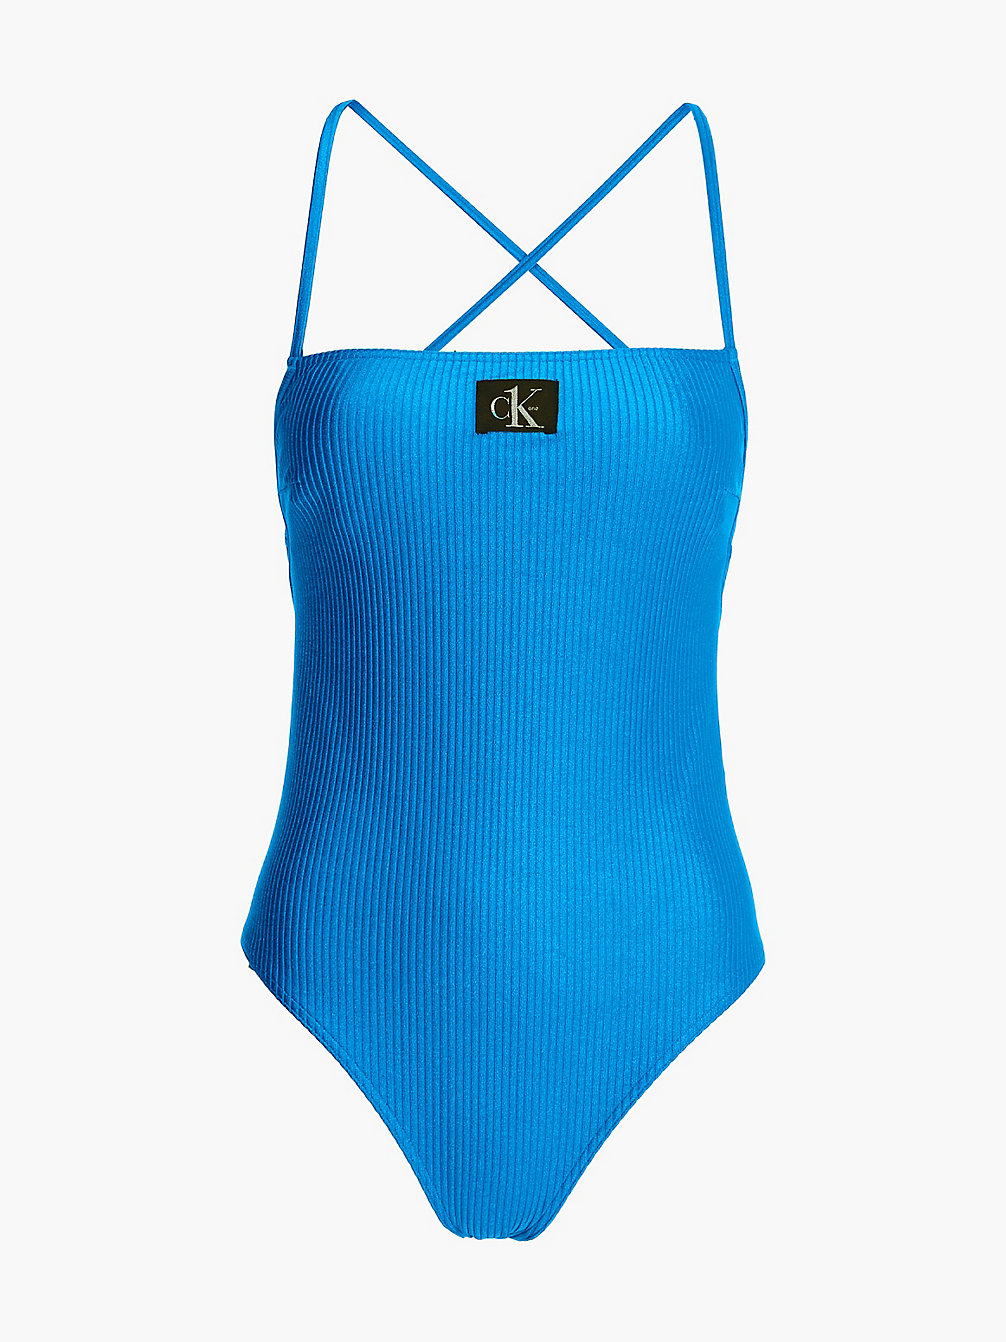 REGATTA BLUE > Слитный купальник с перекрещивающимися сзади бретелями - > undefined Женщины - Calvin Klein